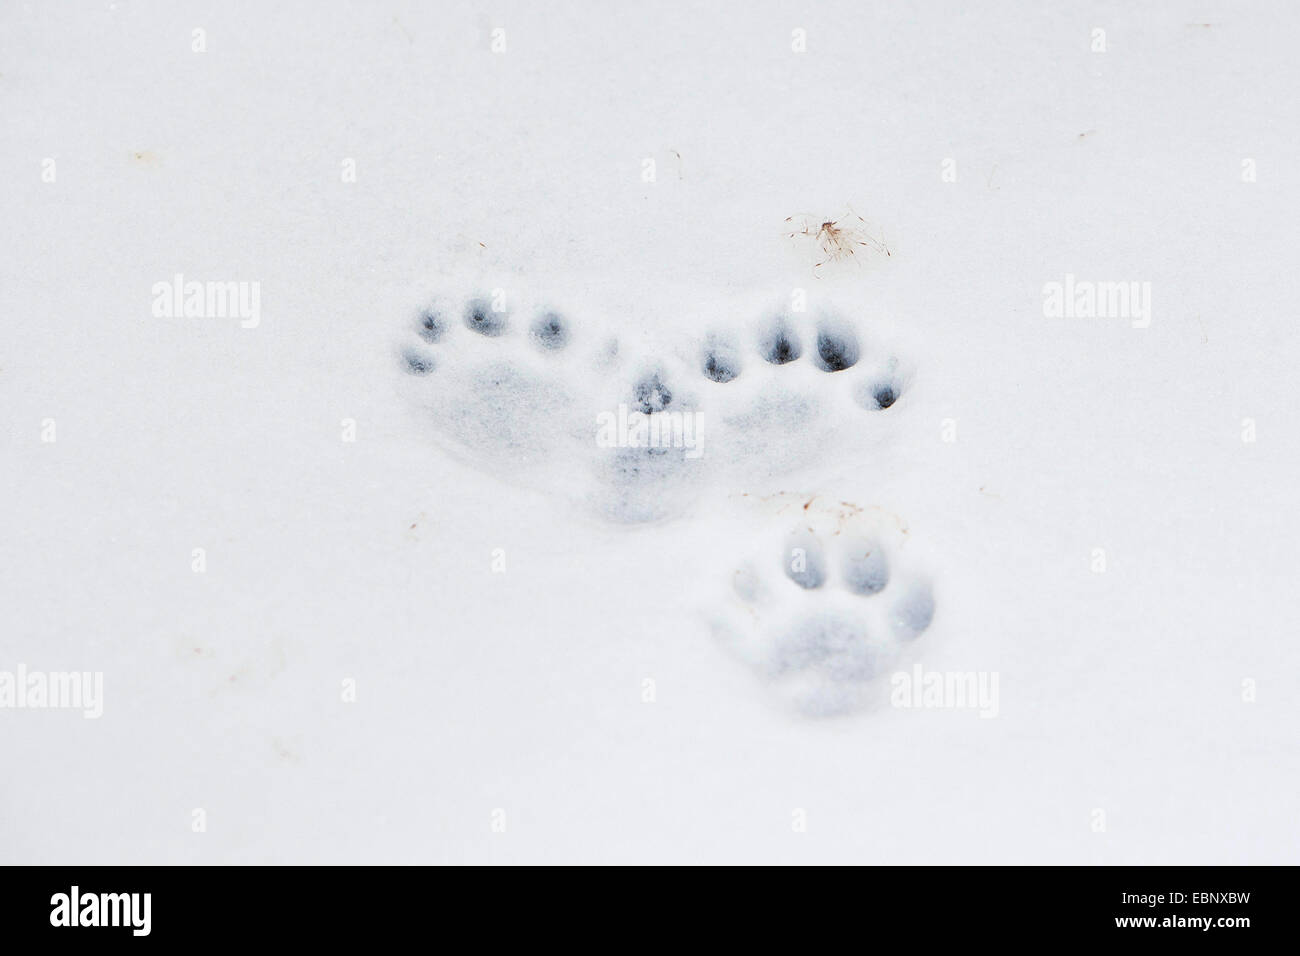 Unione Lontra di fiume, Lontra europea, lontra (Lutra lutra), le tracce di una lontra di fiume nella neve e nel ghiaccio, Germania Foto Stock